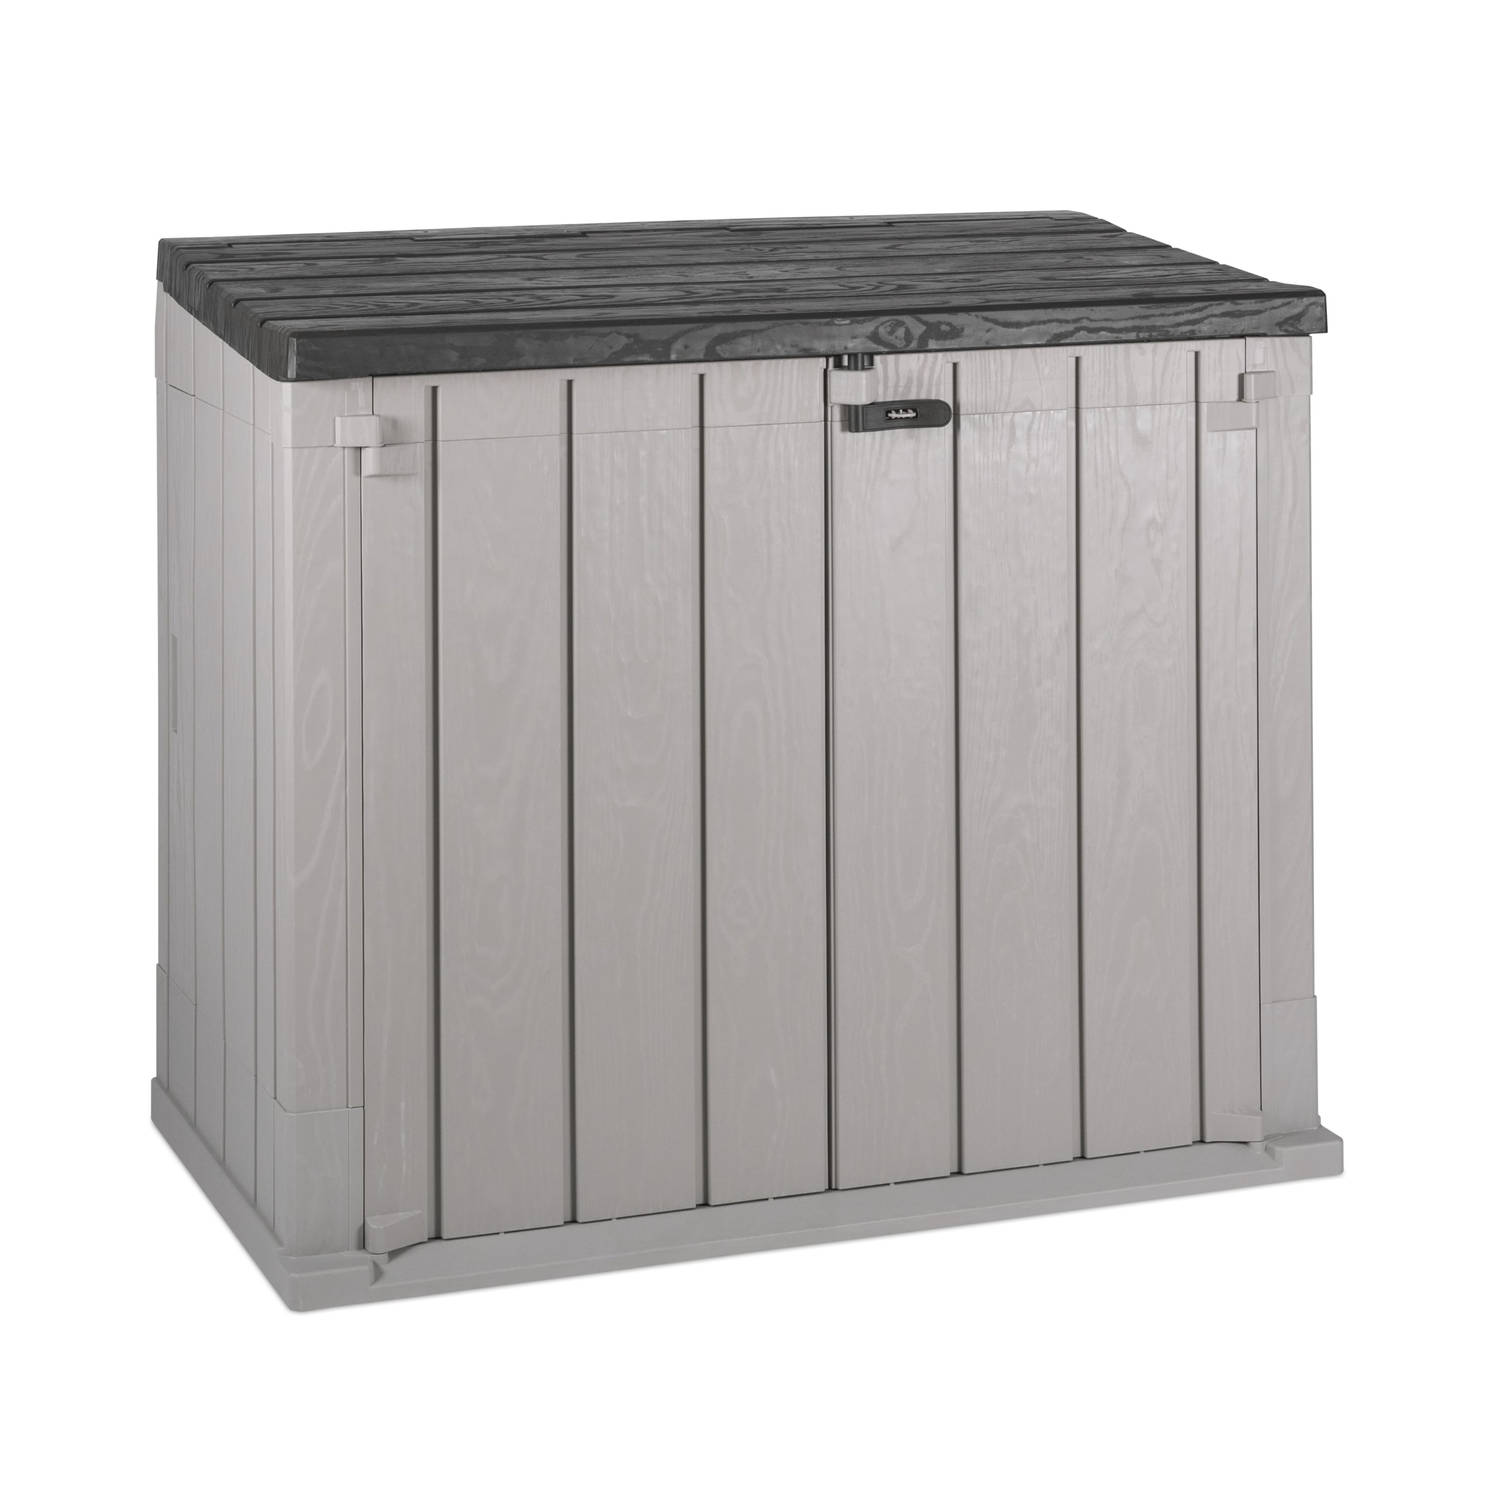 Toomax Stora Way opbergbox en containerbox - 842L - Grijs - weer- en vorstbestendig - zeer geschikt als kussenbox of containerbox voor in de tuin